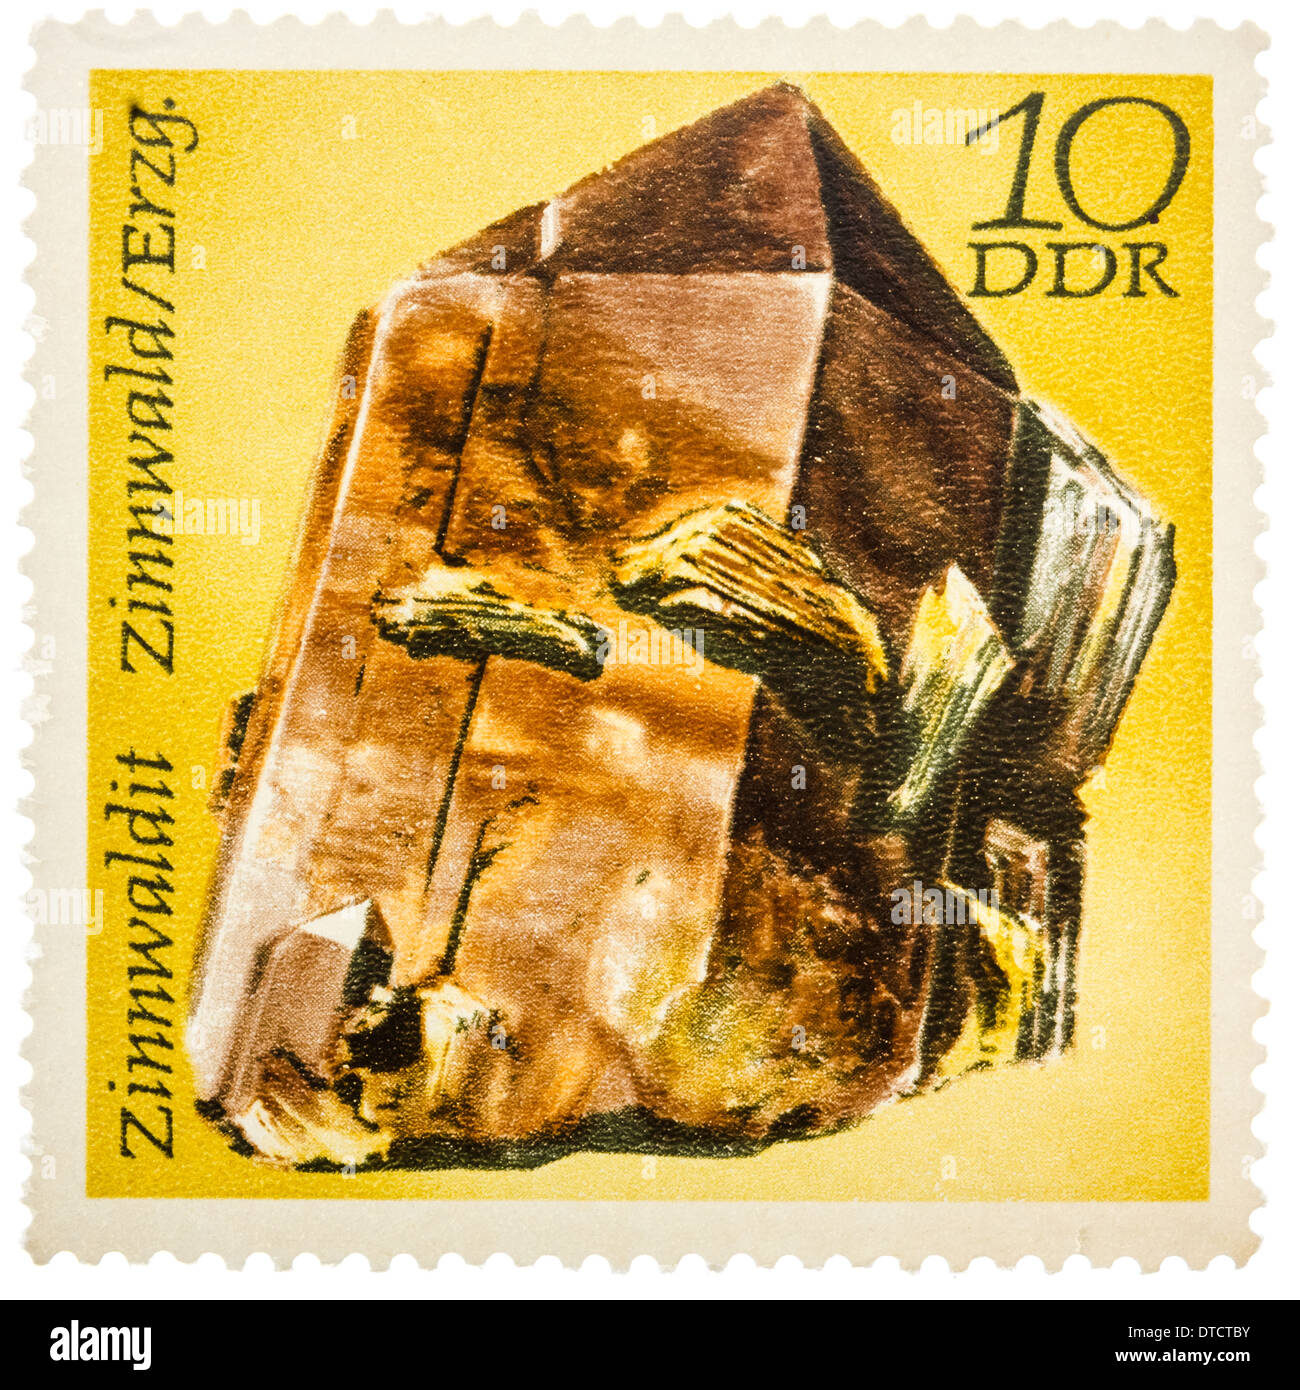 Gedruckt in der Deutschen Demokratischen Republik (DDR) Stempel zeigt Halbedelstein Zinwaldit, Mineralien Zinnwaldit, Zinnwald, Stockfoto